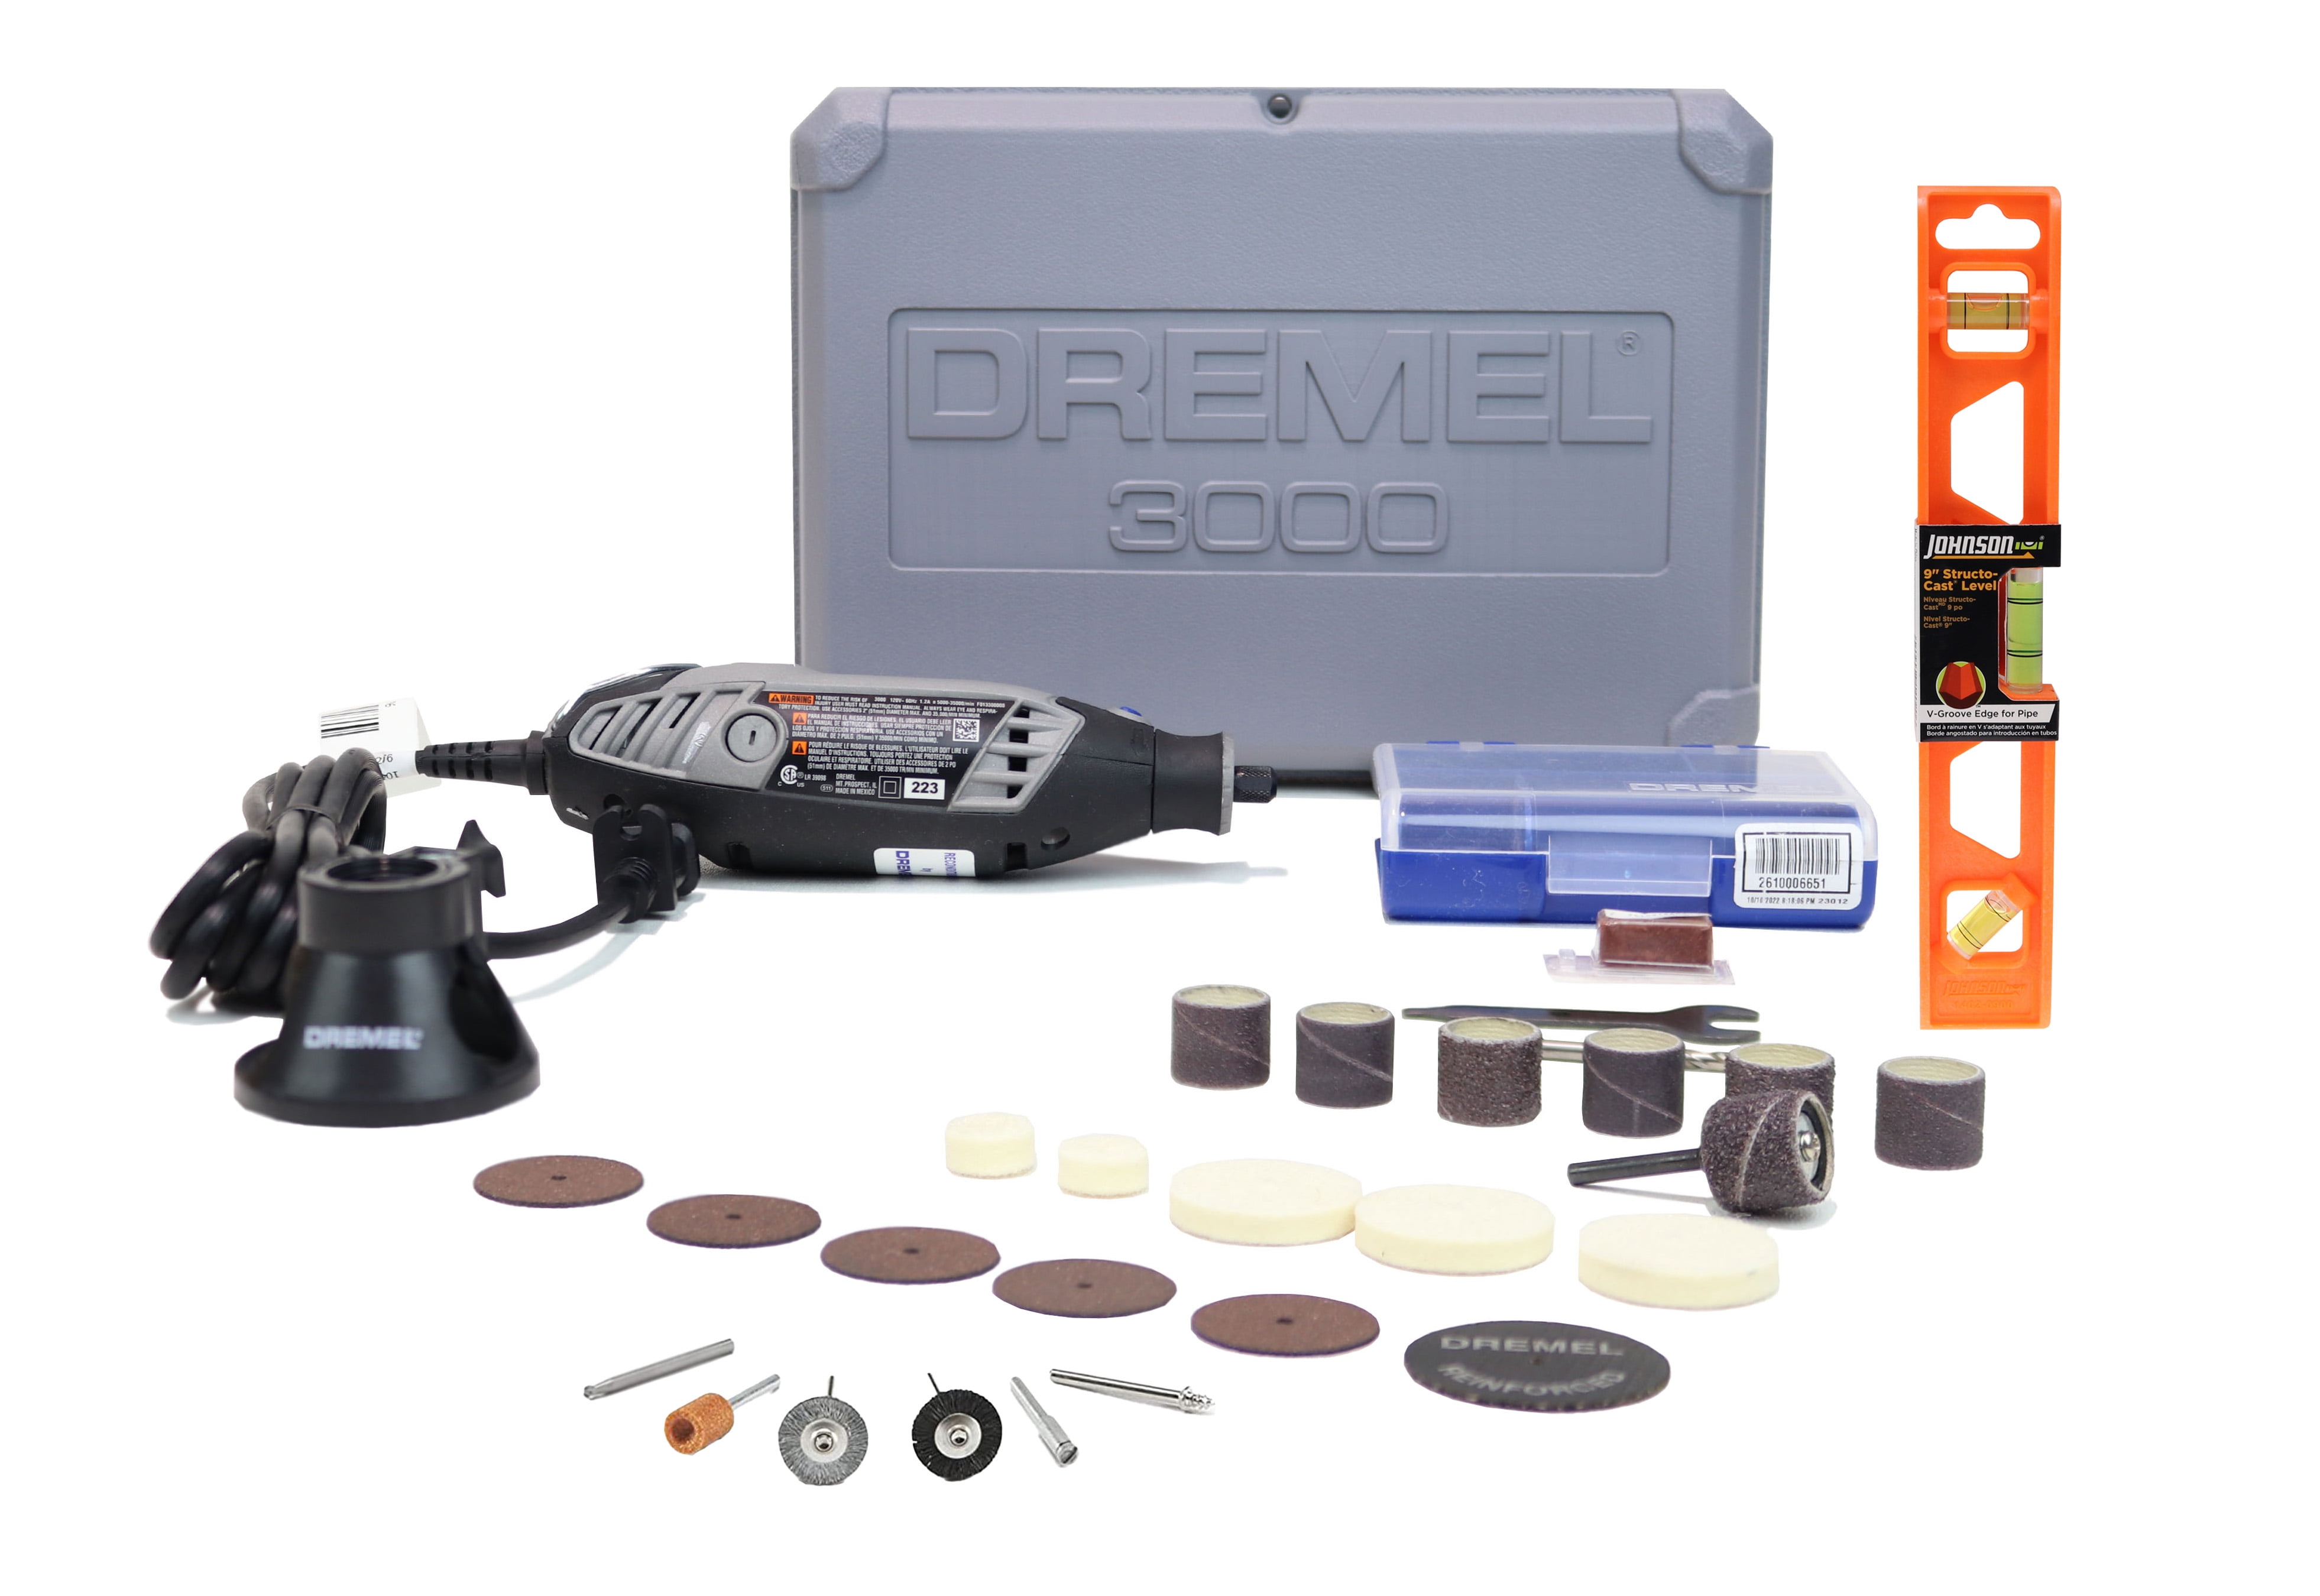 Dremel 8220 12V 35000 RPM Rotary Tool Kit for sale online